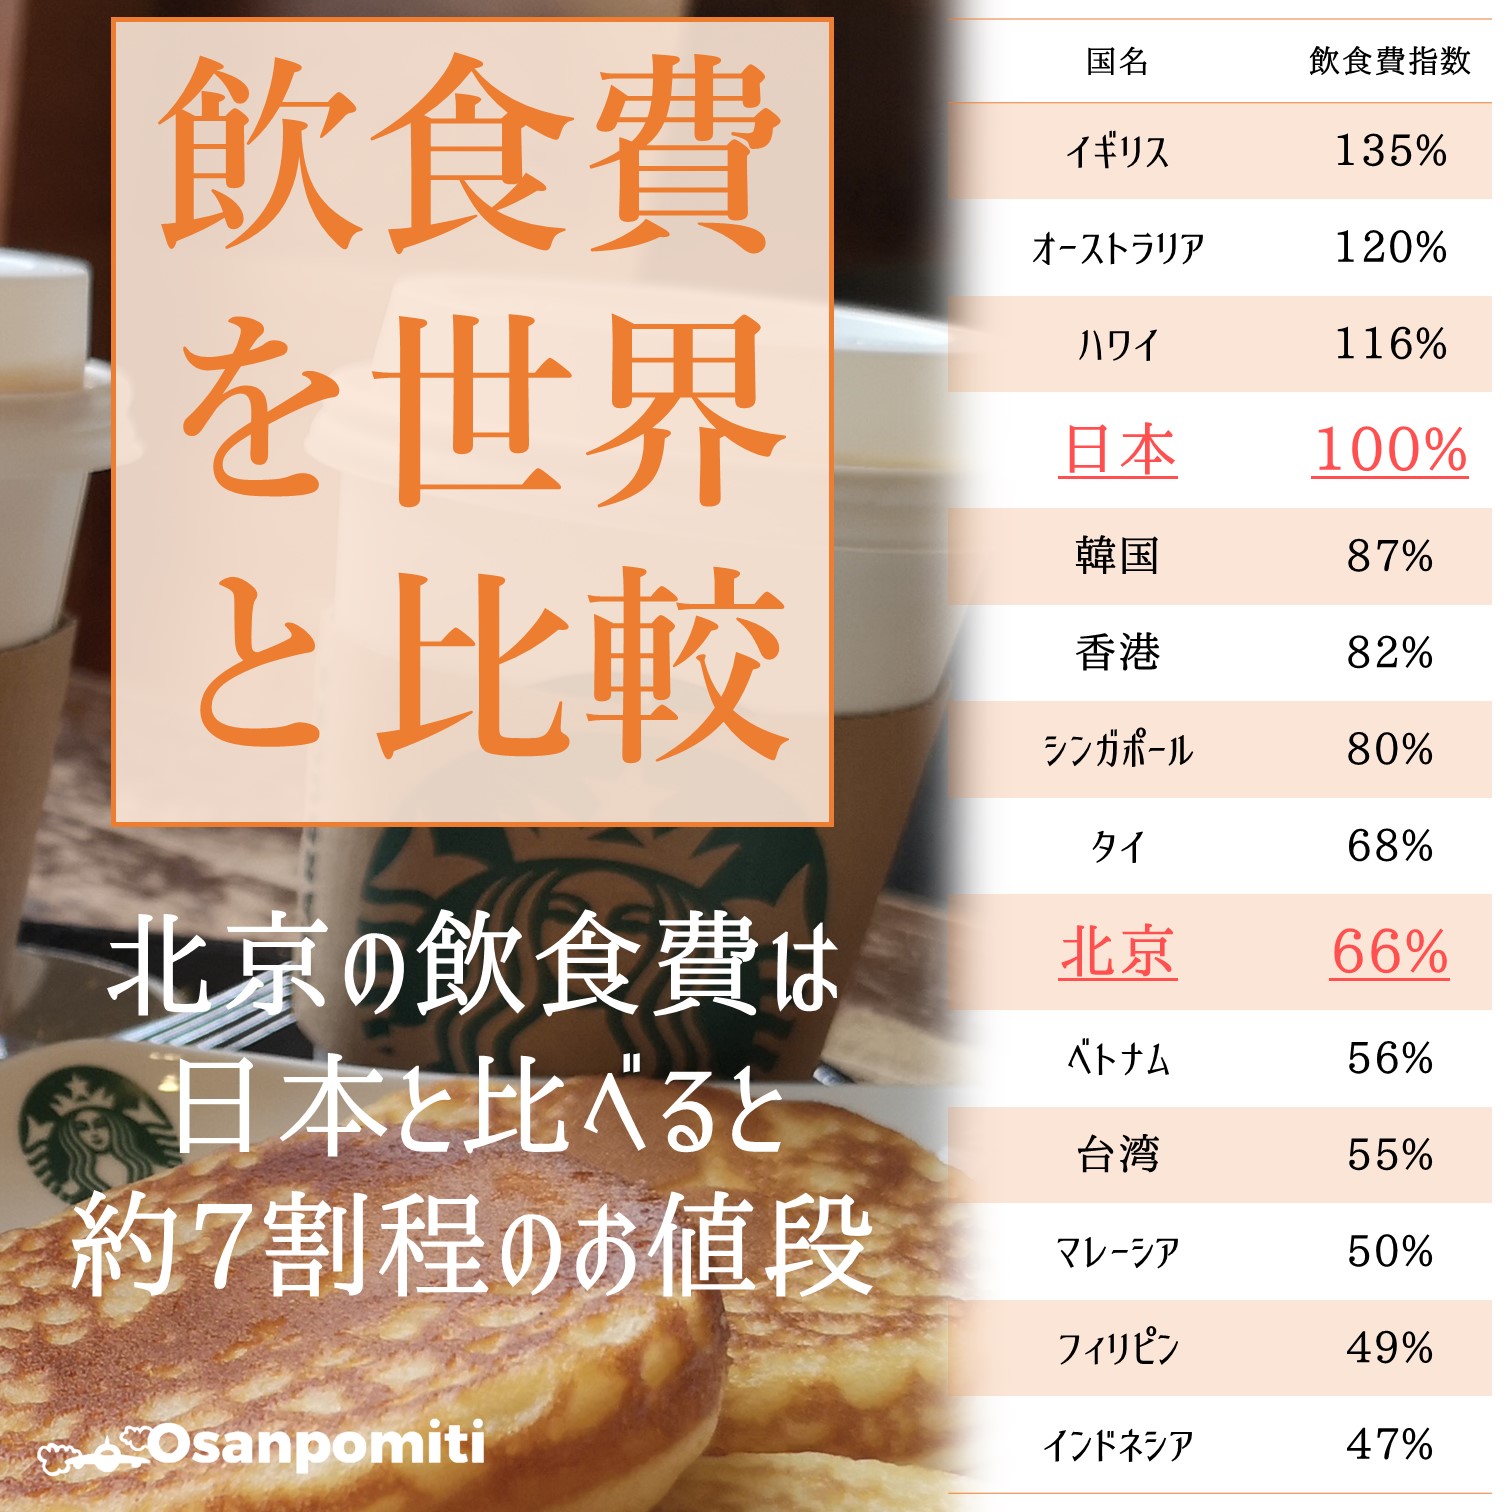 北京の飲食費を世界と比較